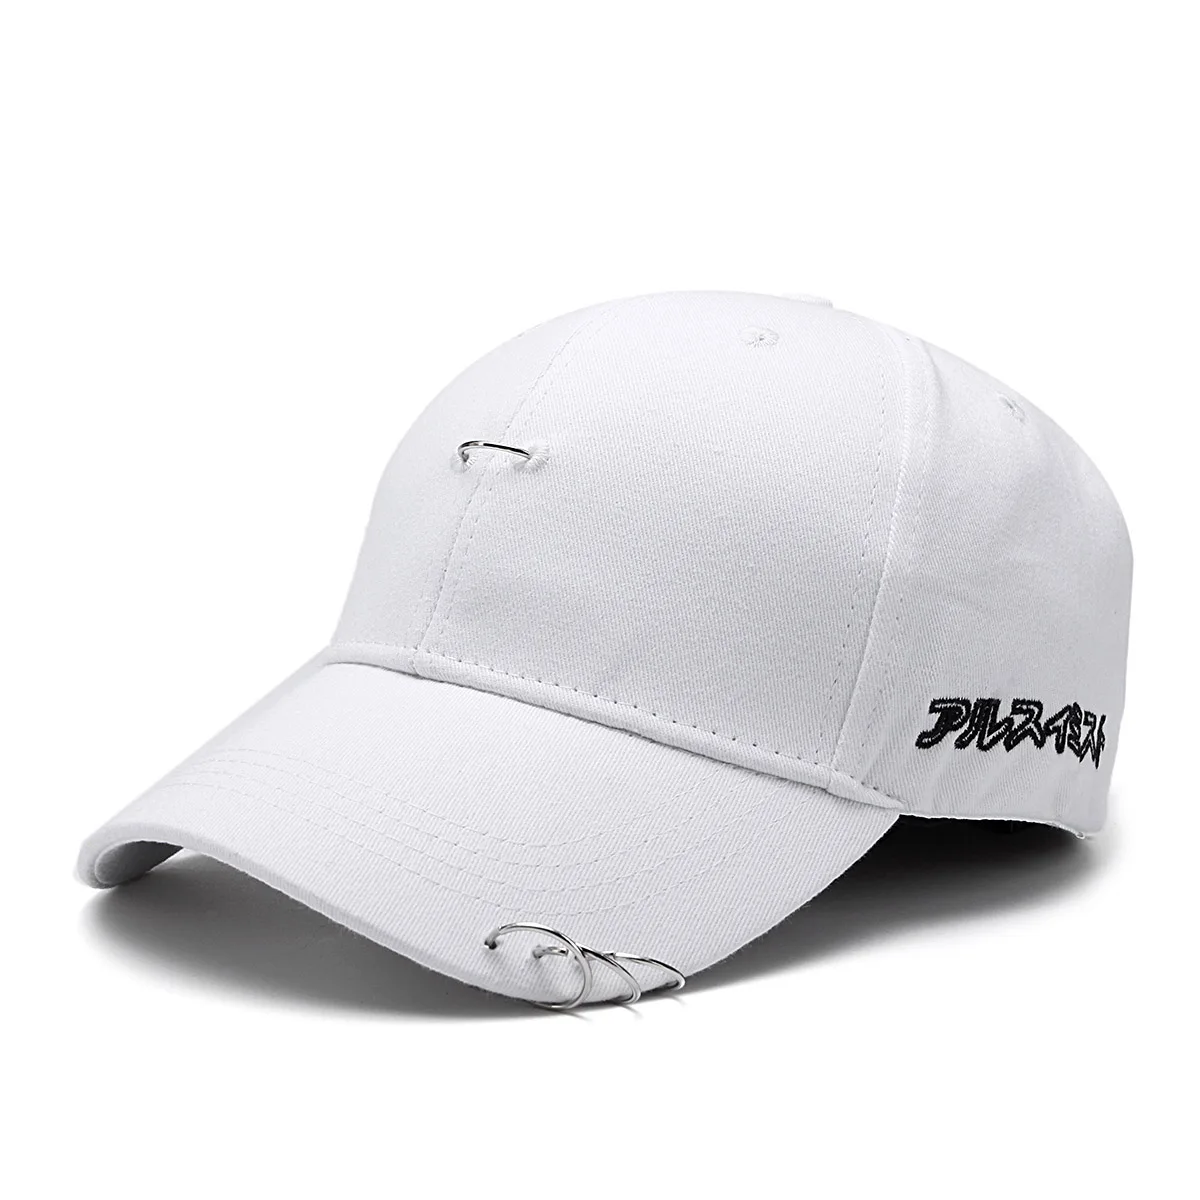 Lintoy оптовой бренд кепка бейсболка установлены шляпа Повседневное Кепка Gorras в стиле хип-хоп Snapback Мыть Cap для мужчин и женщин унисекс - Цвет: styleA white